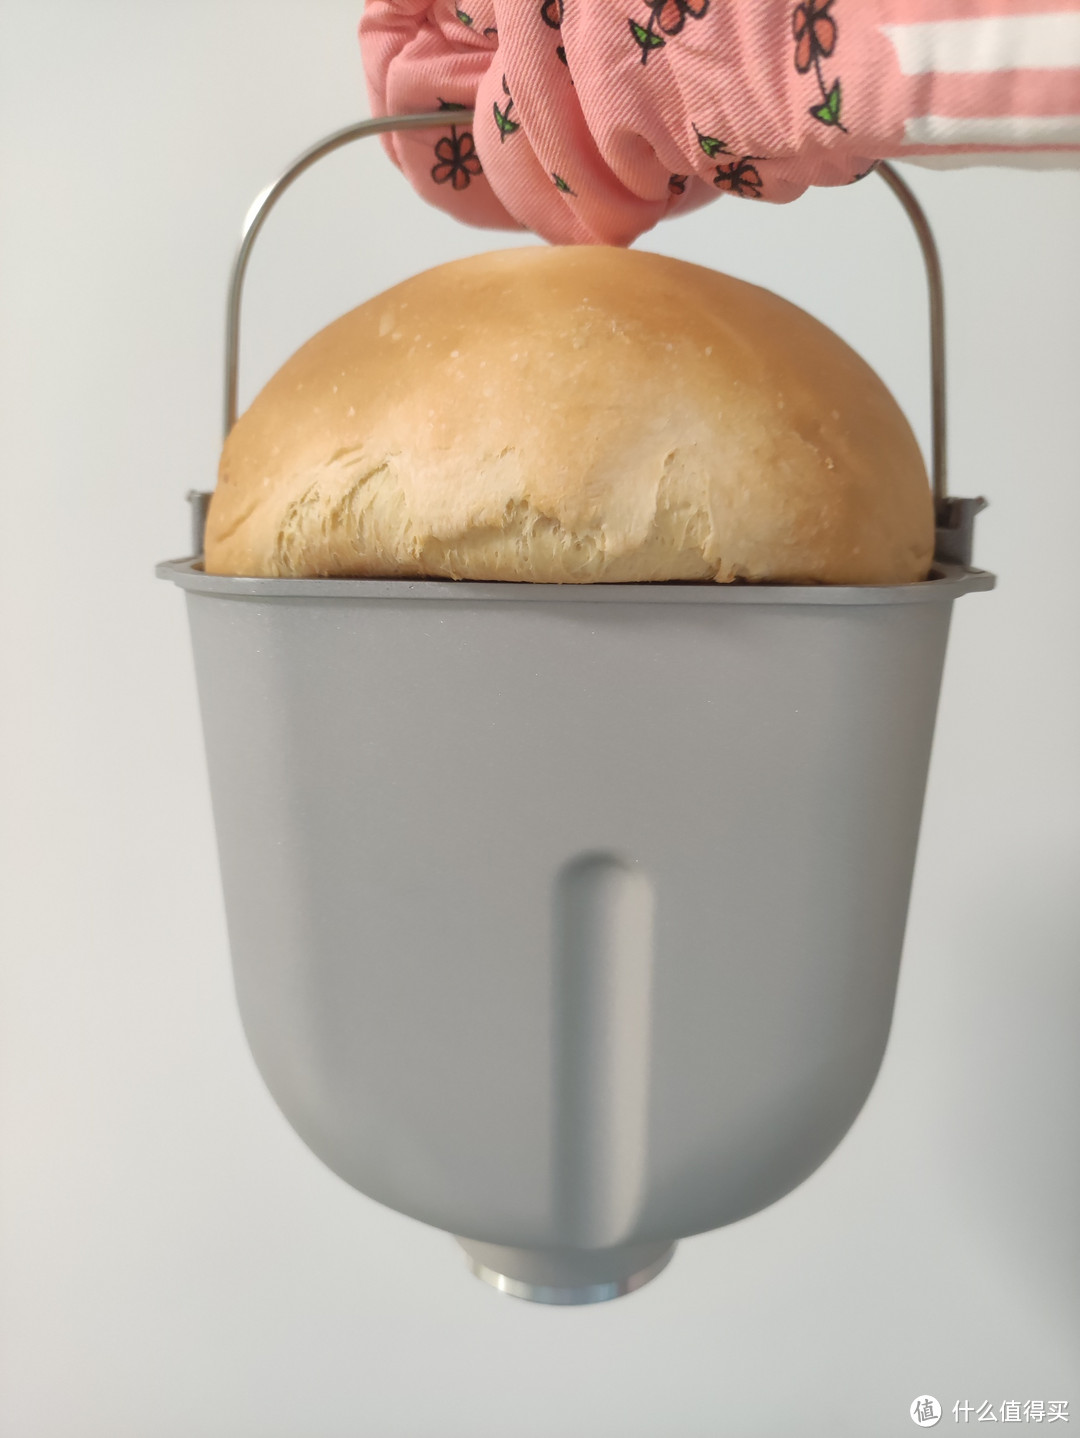 松下面包机，一键搞定美味面包！🍞